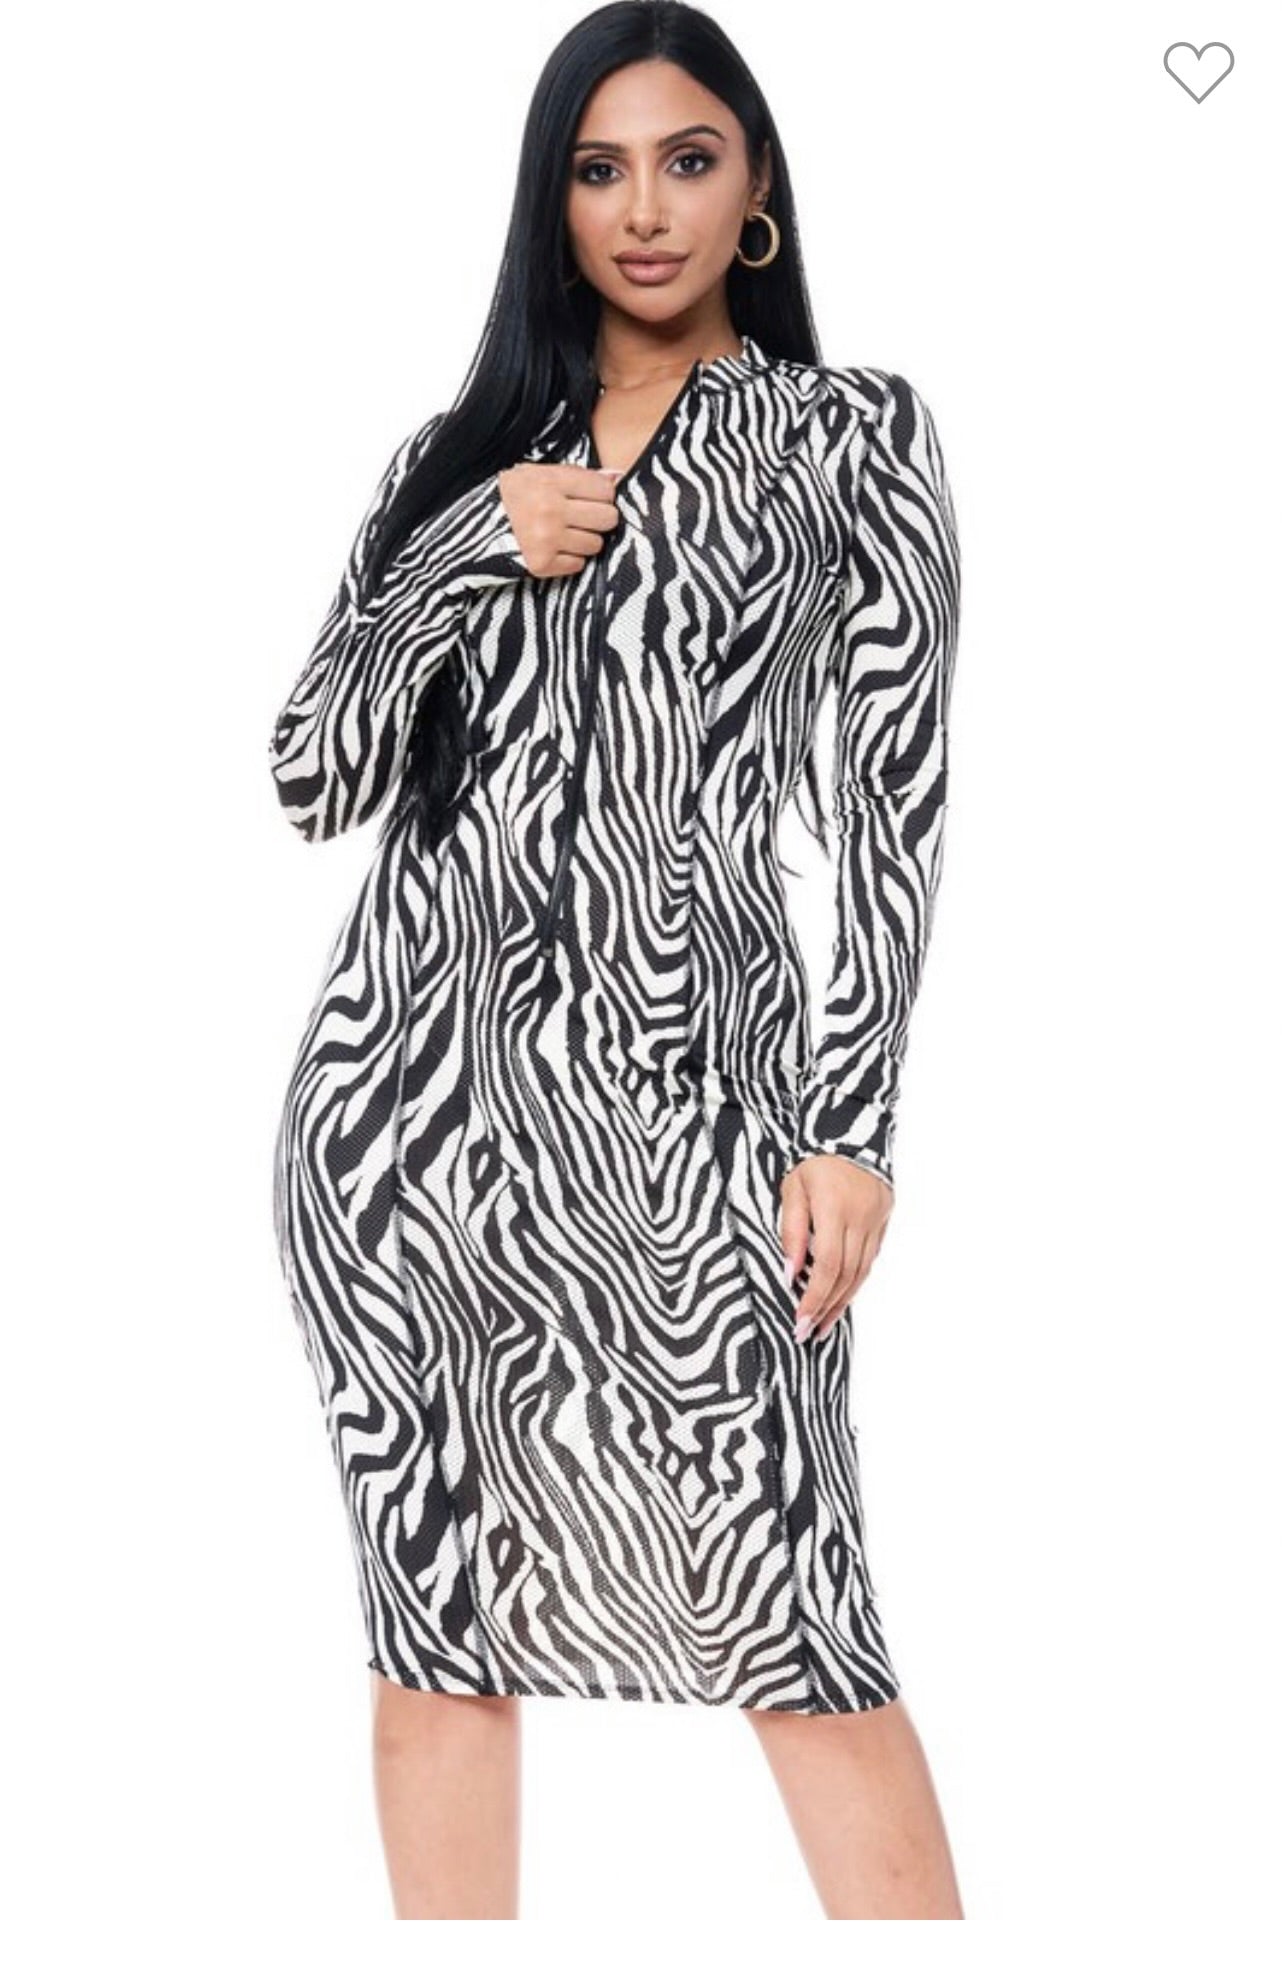 Zebra Print Mesh Dress with Zipper (75)